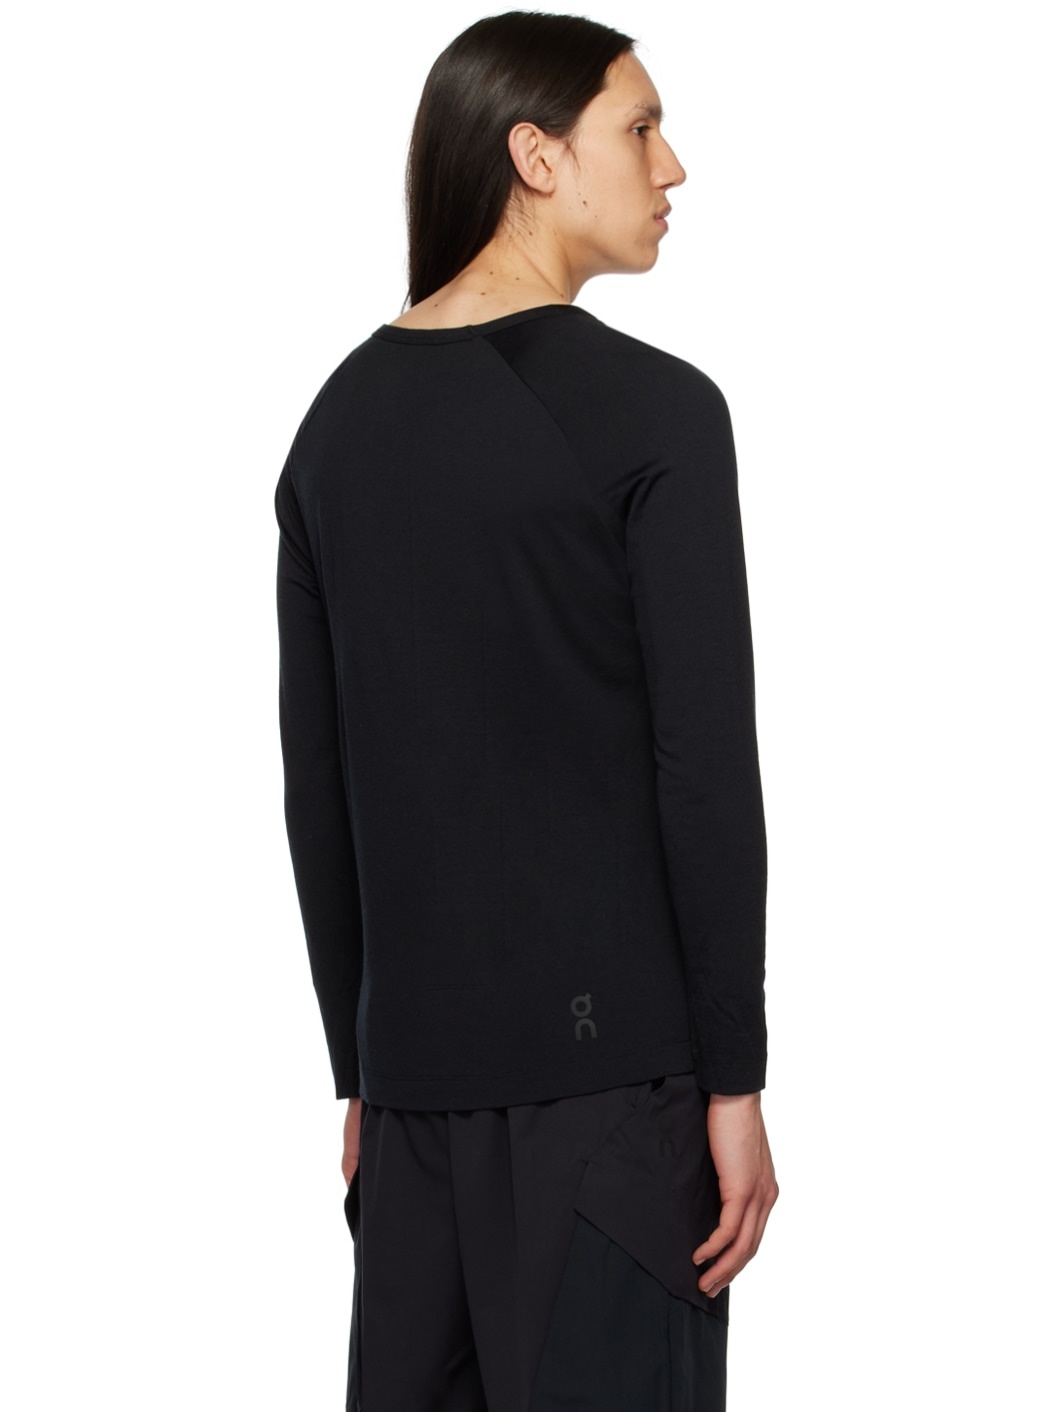 Black Lightweight Long Sleeve T-Shirt - 3